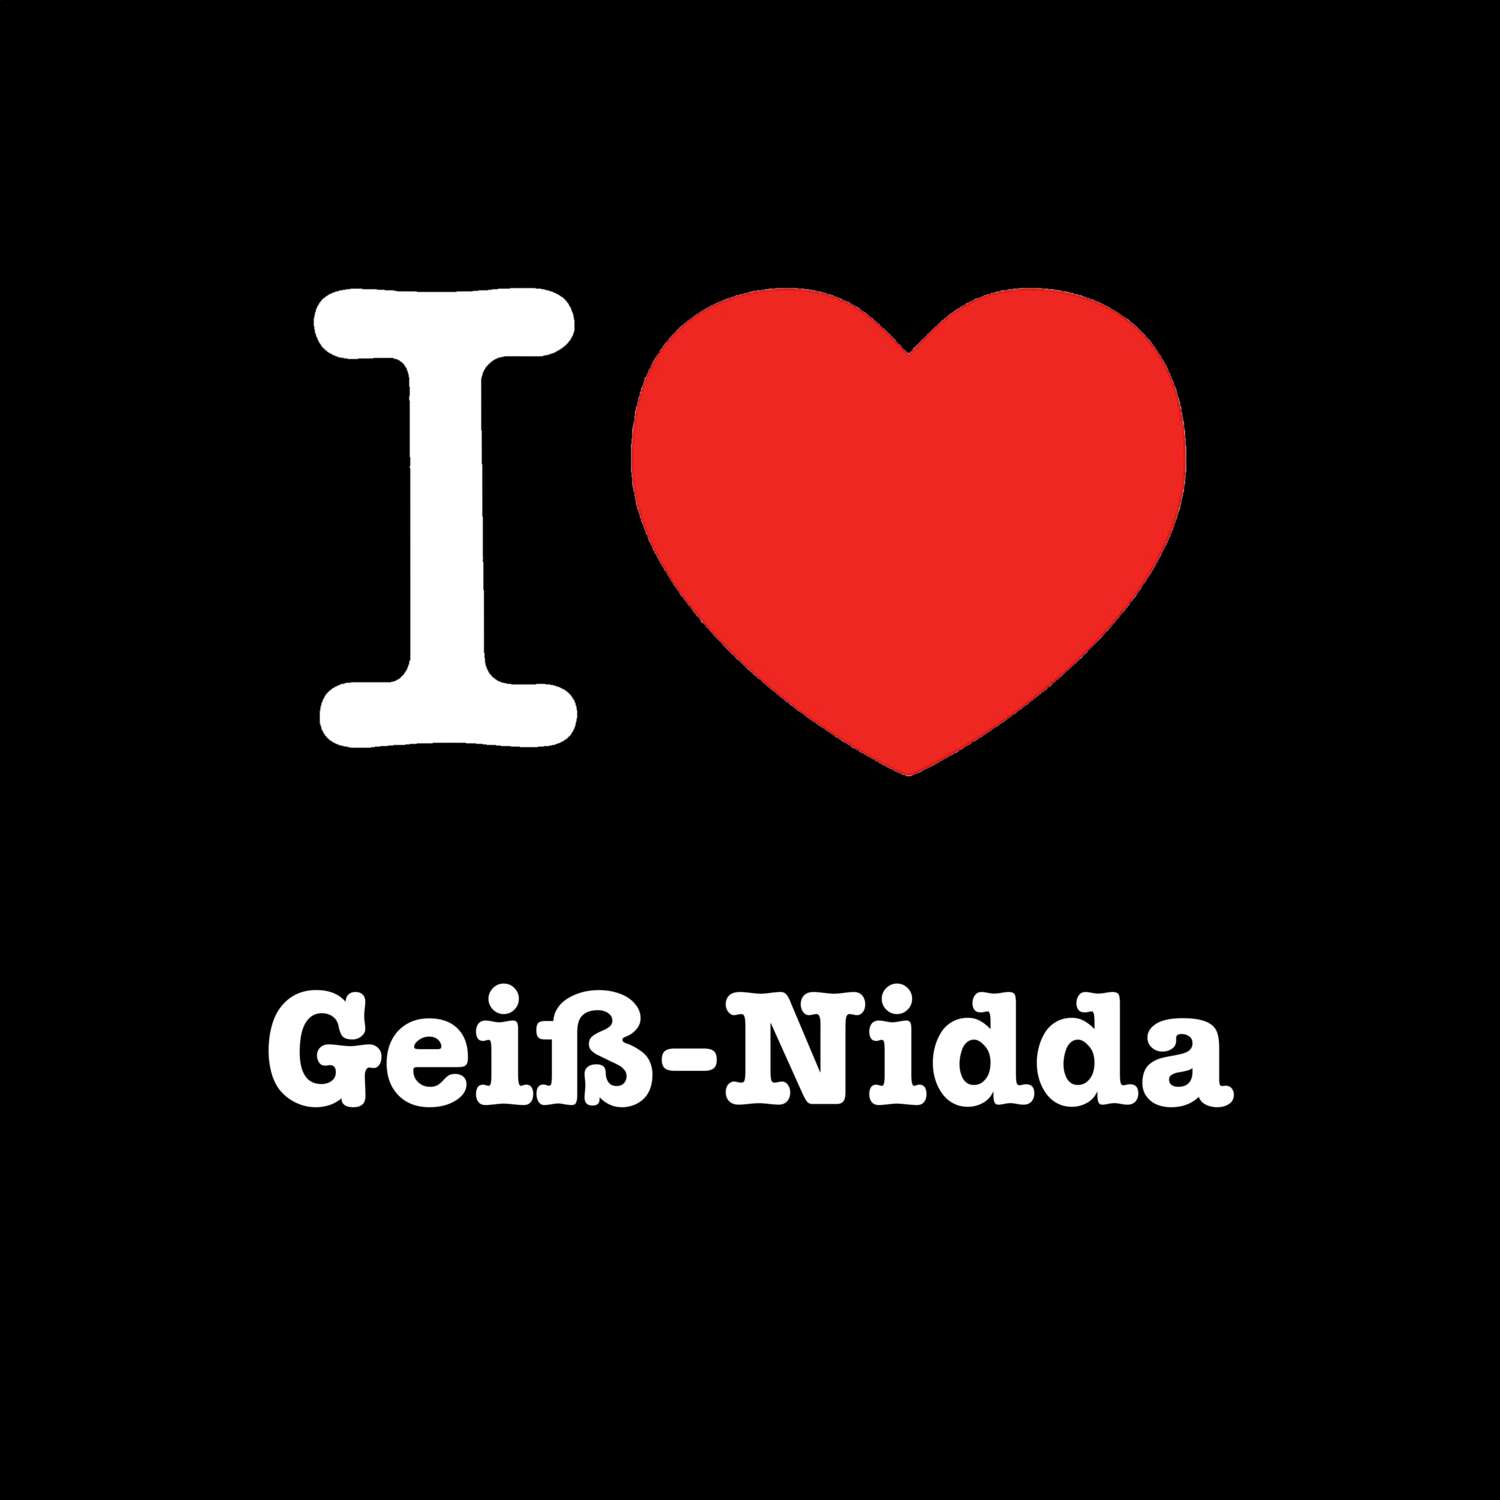 Geiß-Nidda T-Shirt »I love«